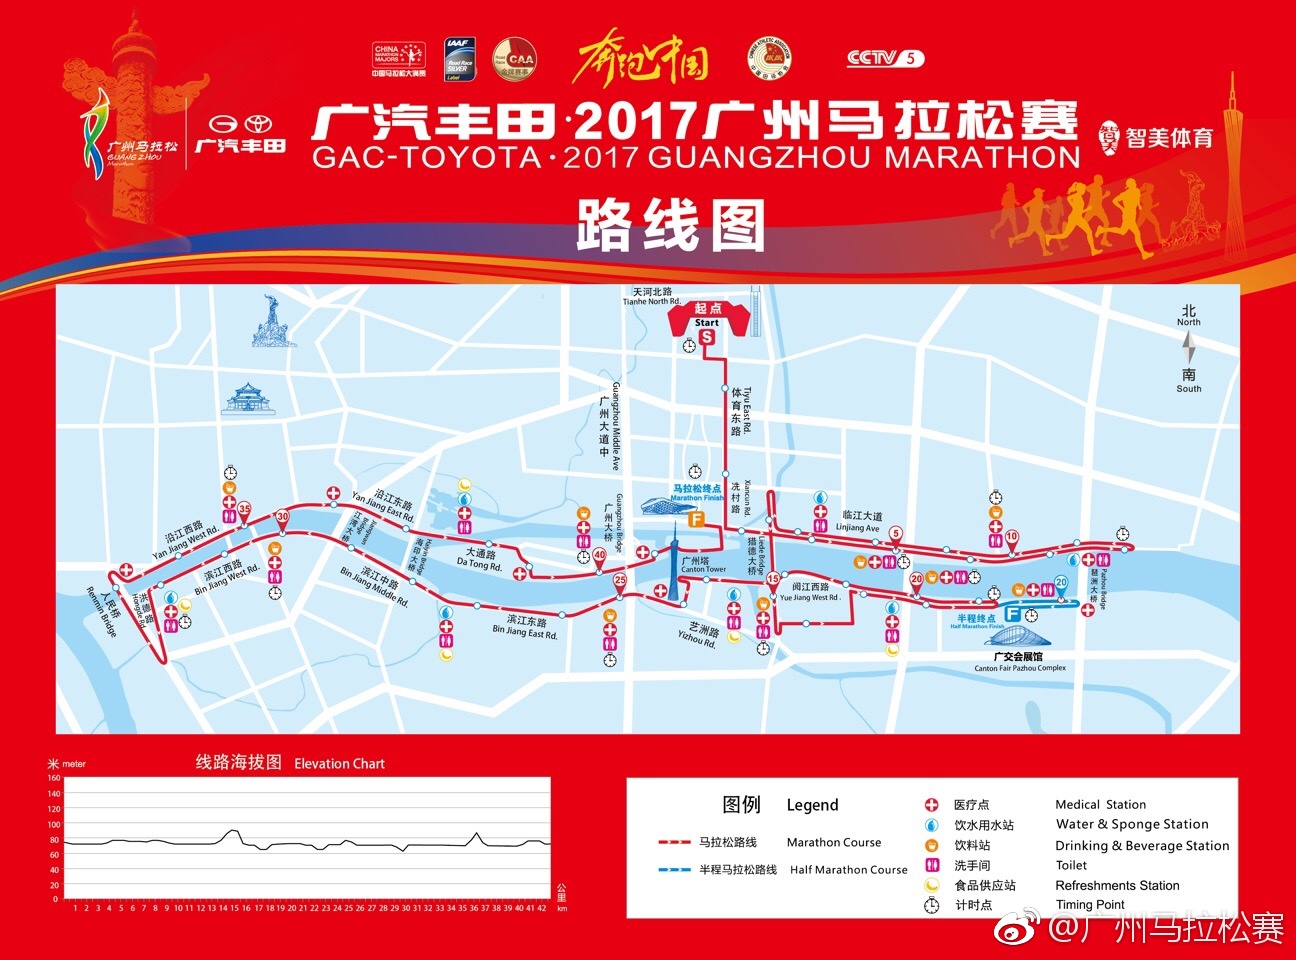 2017广州马拉松起跑点:天河体育中心南广场(含具体路线)